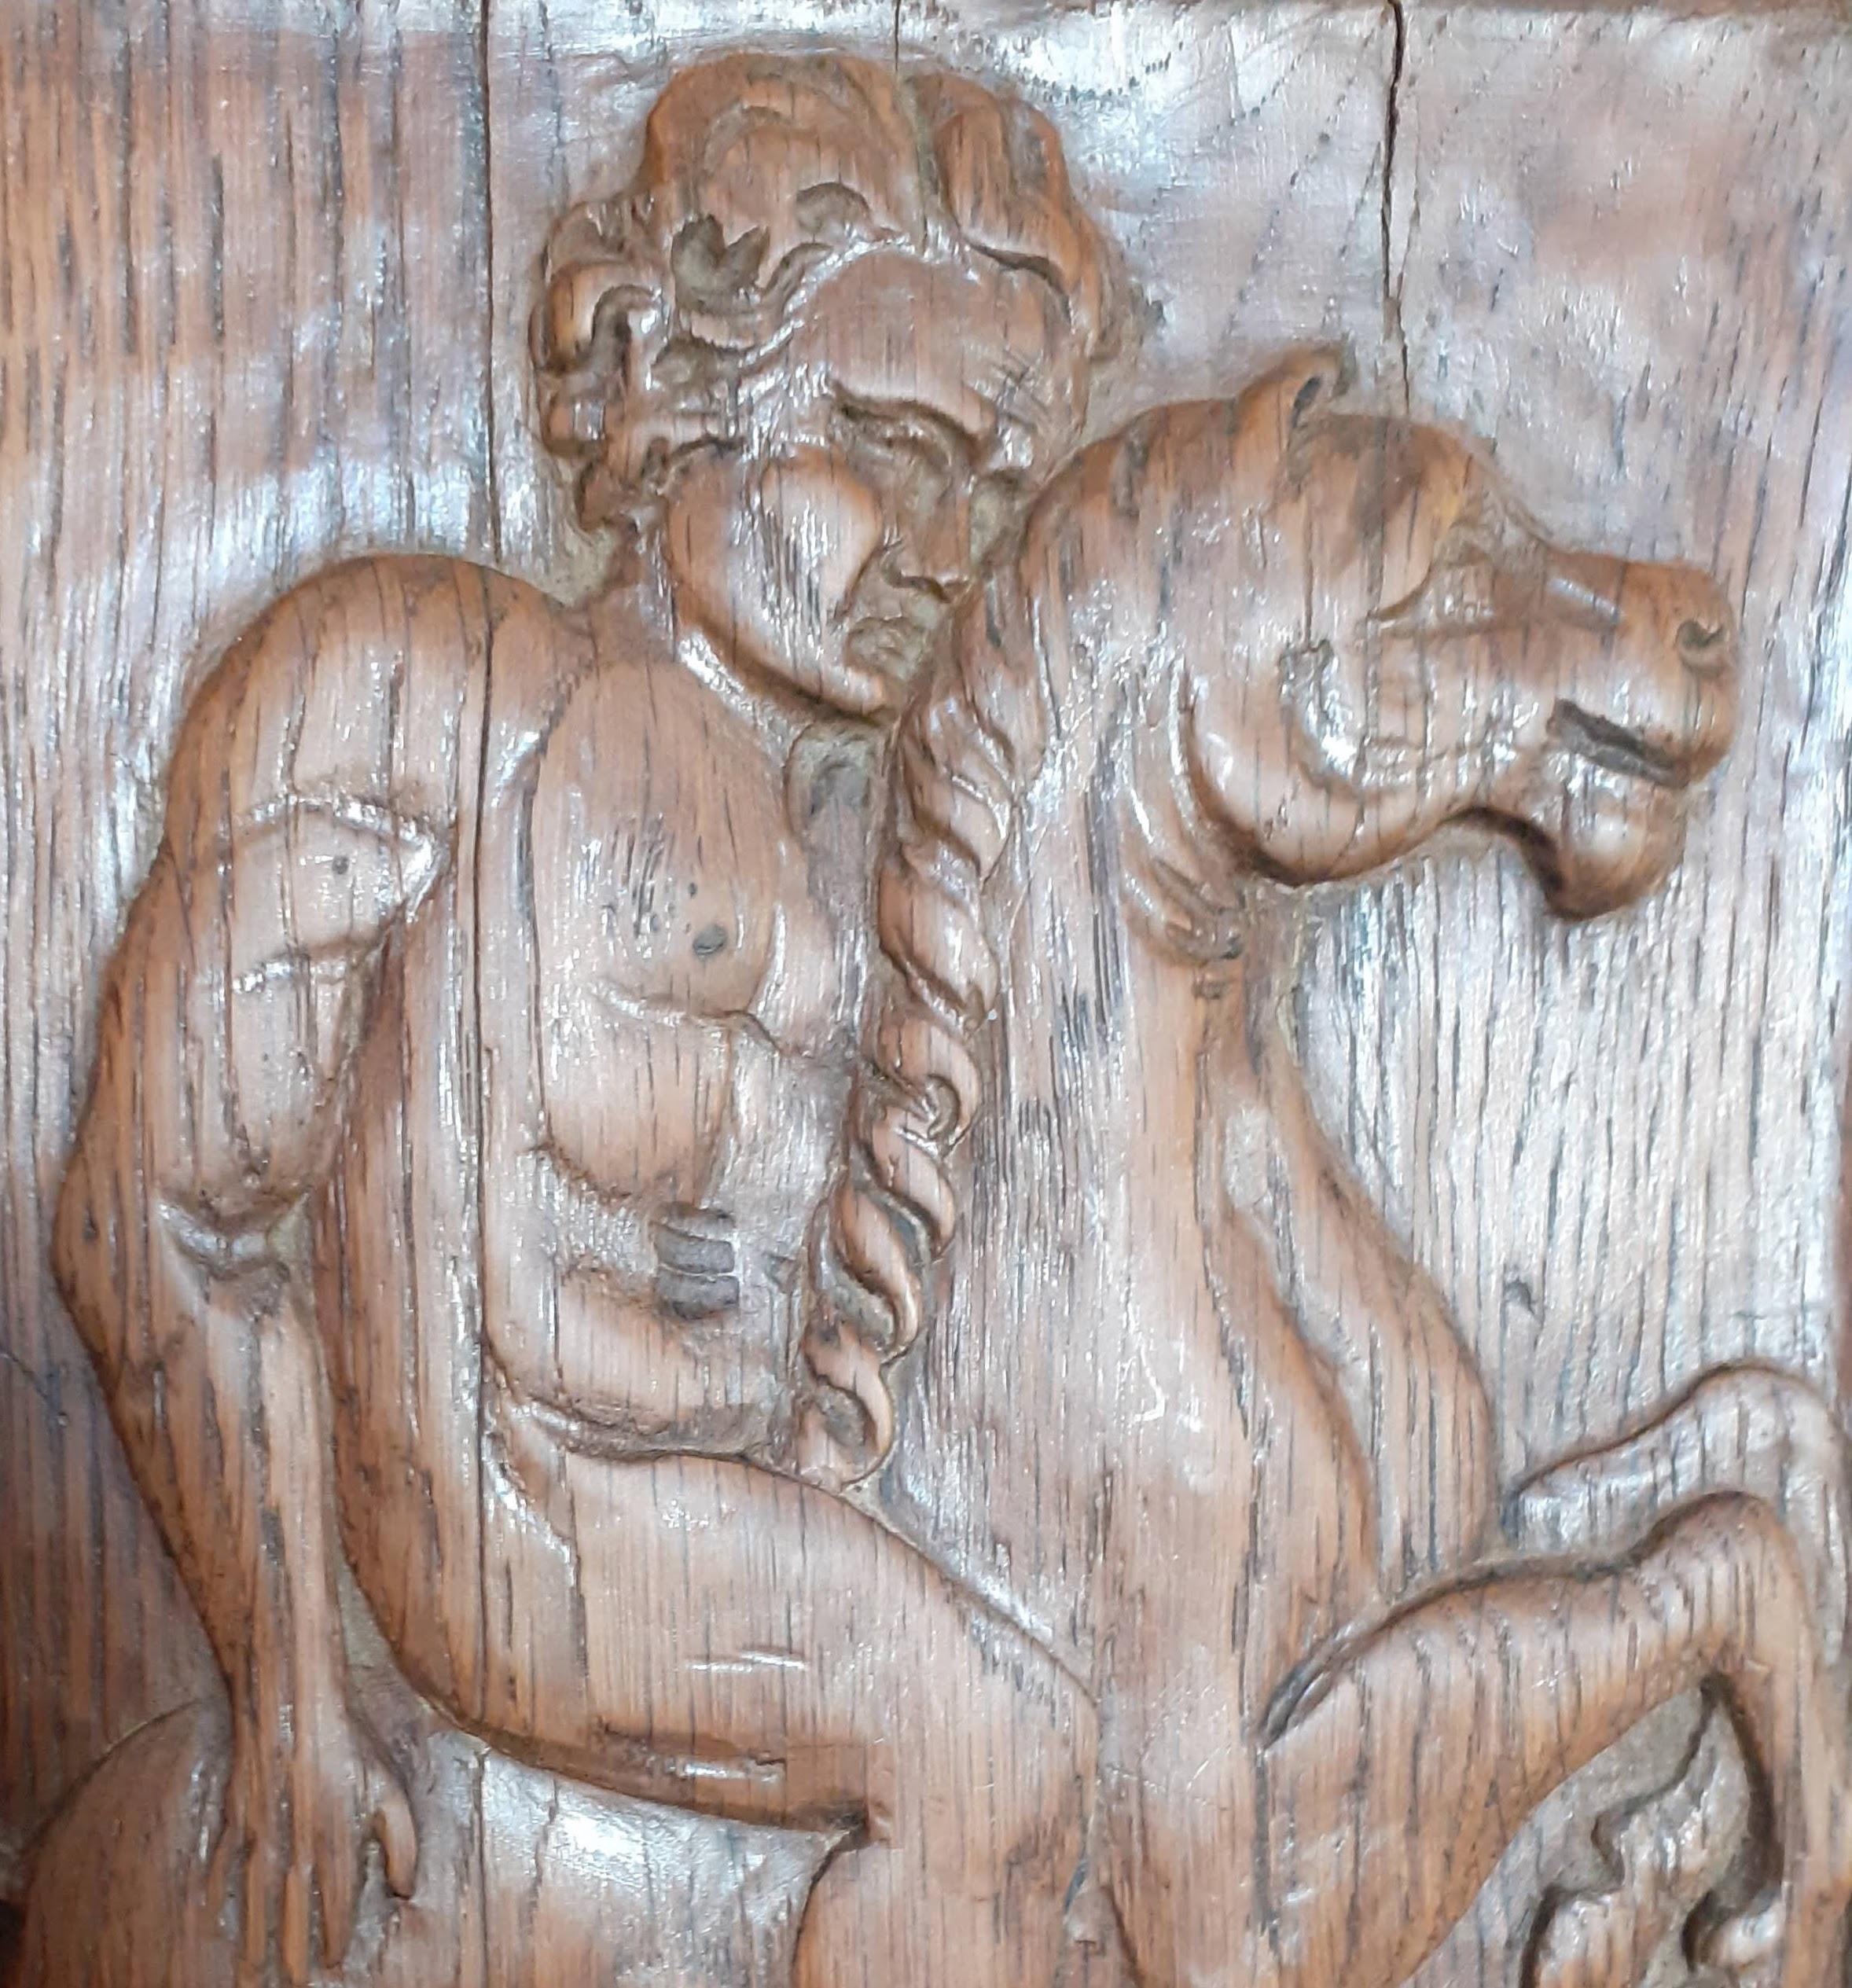 Panneau en bois français anciennement sculpté en bas-relief, représentant un cavalier nu masculin musclé, accompagné de son chien.  Sculptée dans un bois de couleur miel, cette pièce ancienne, datant du XIXe siècle, a été acquise dans le Nord de la